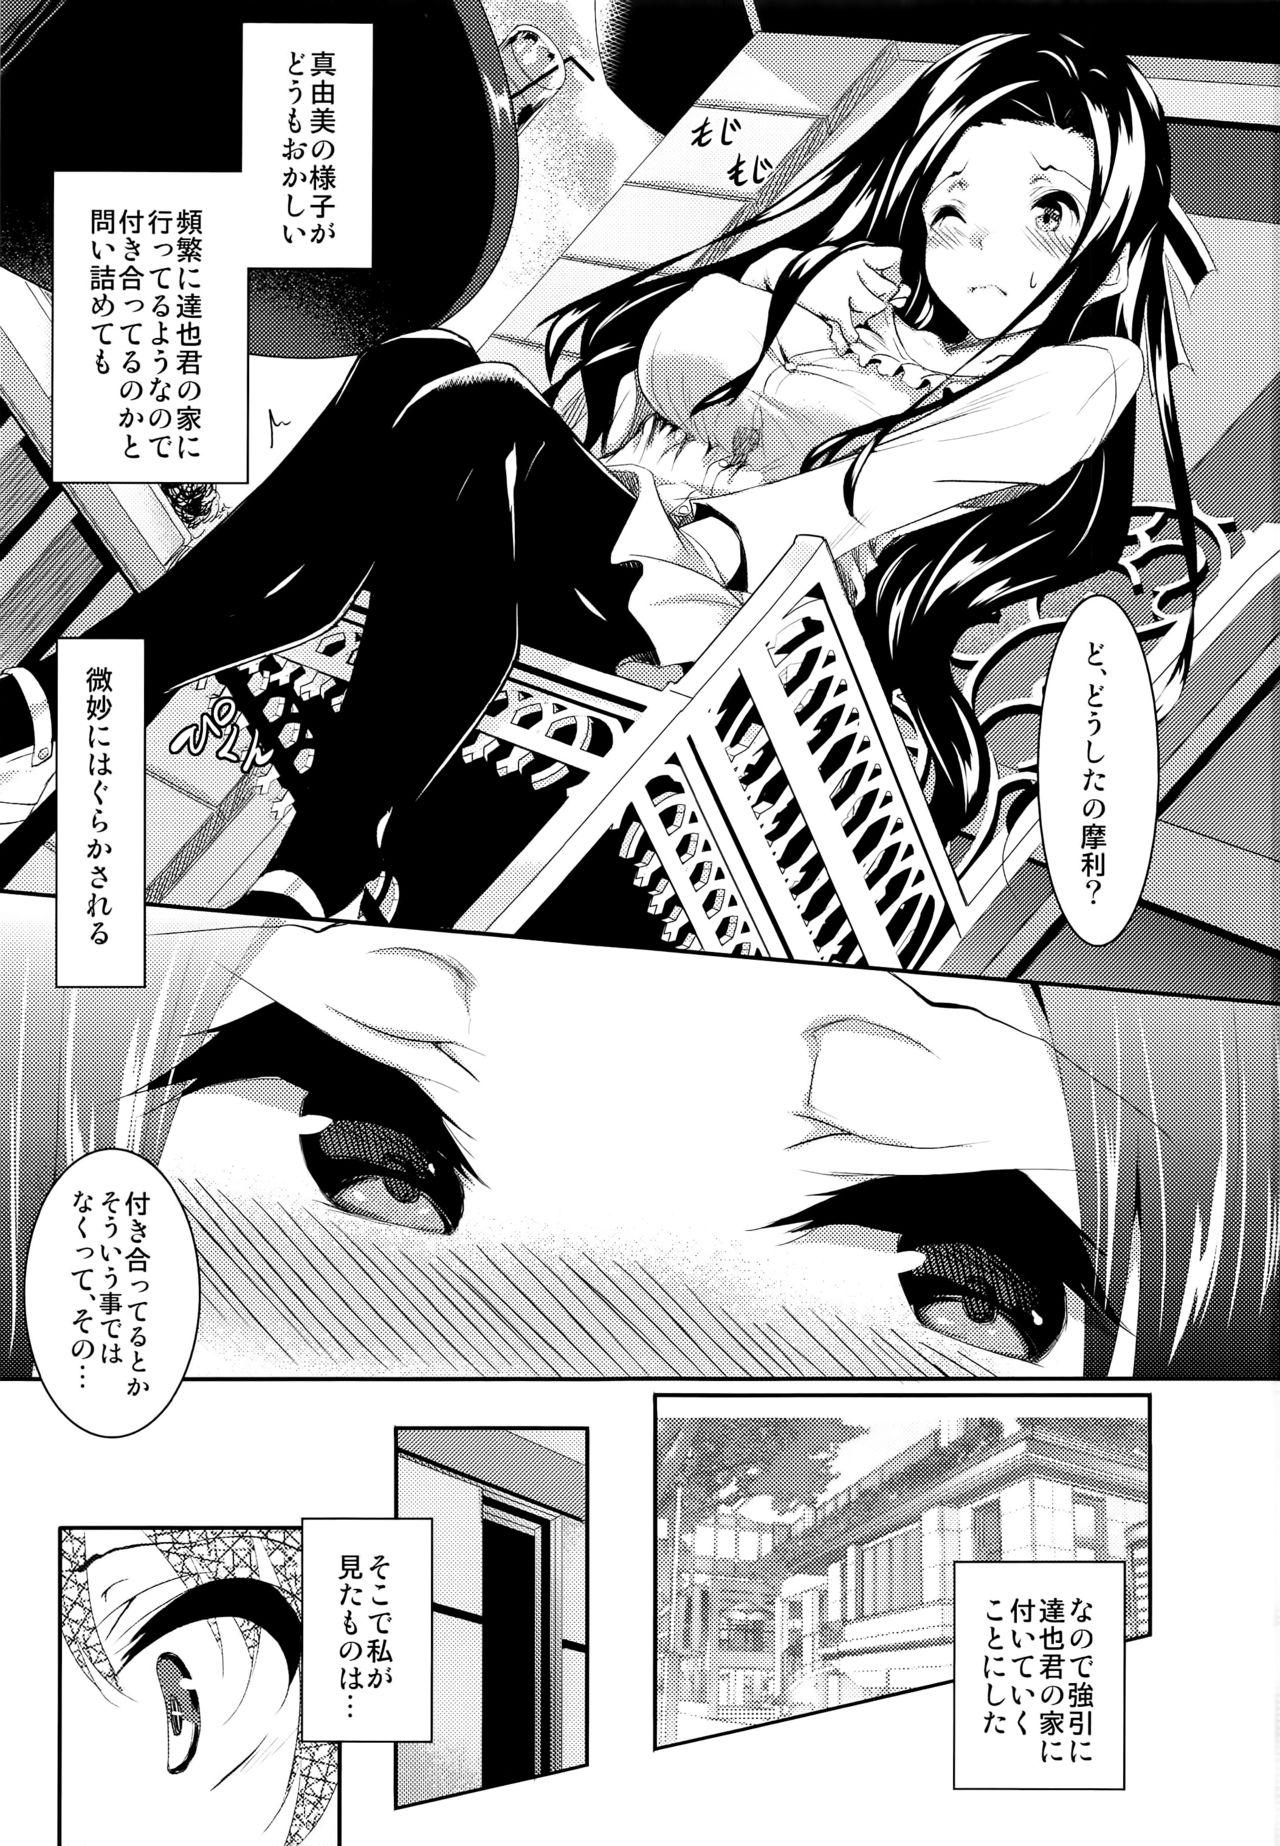 Private Sasuoni! 4 - Mahouka koukou no rettousei Tia - Page 3